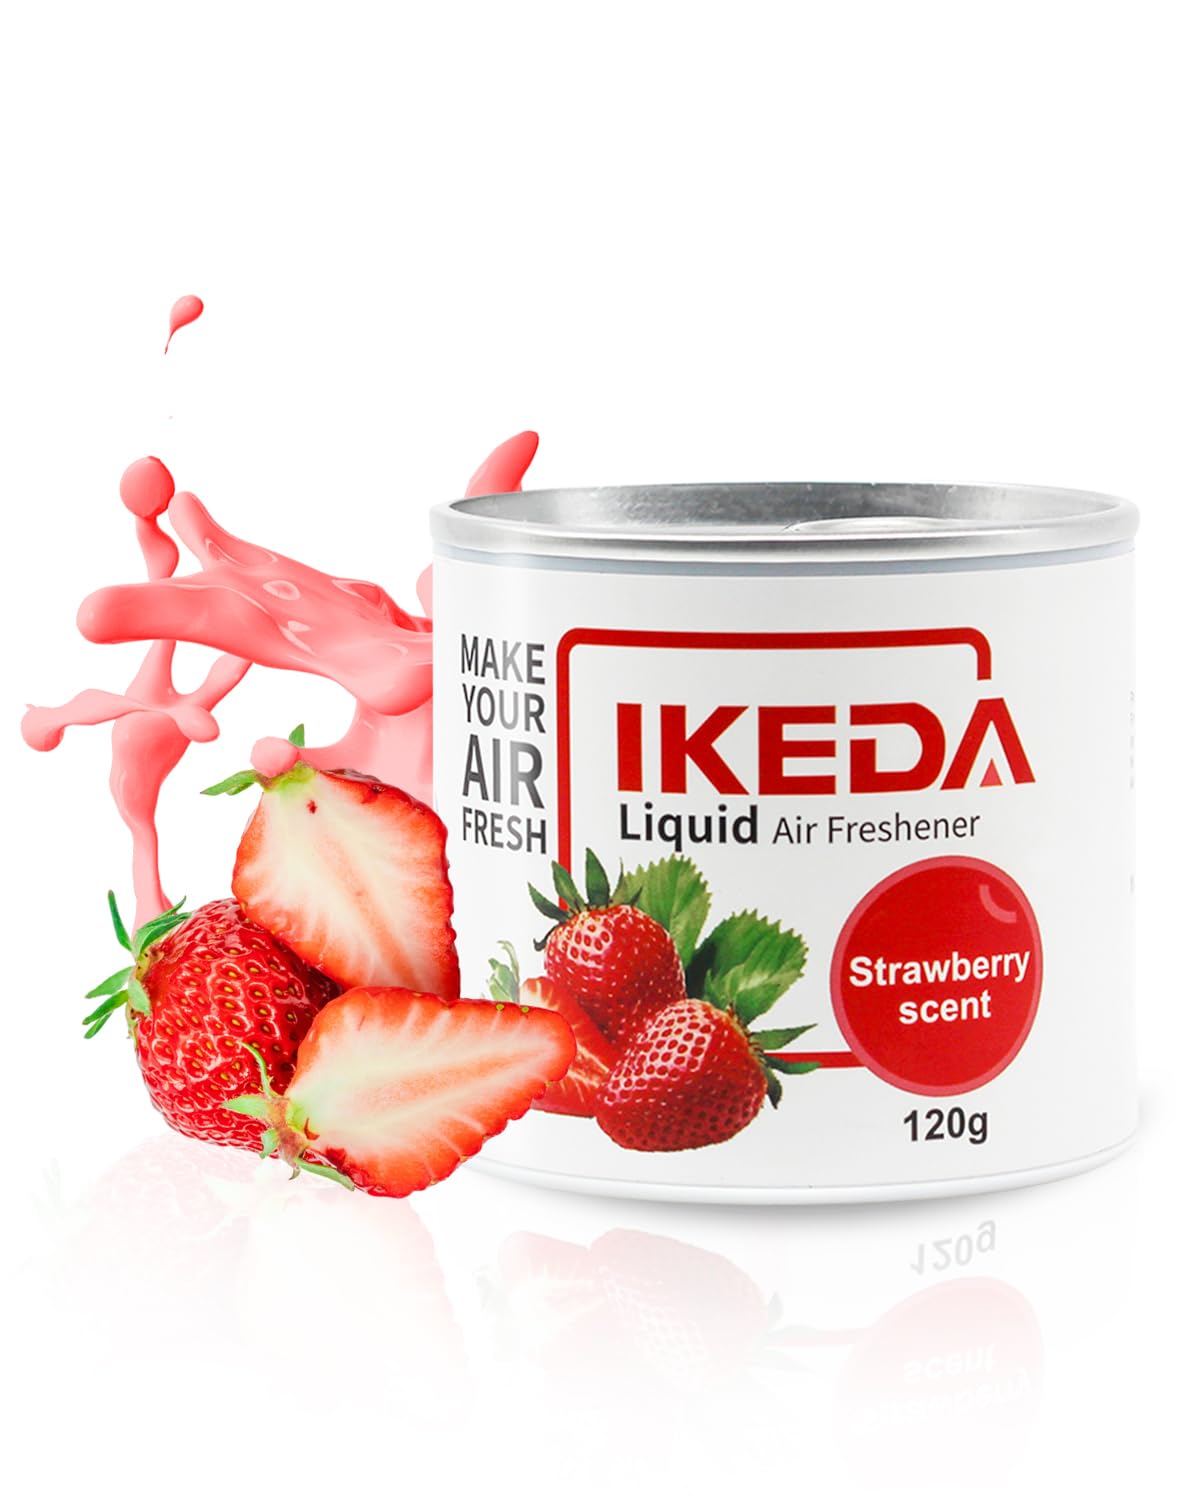 Ikeda Liquid Air freshener Strawberry Scent - 120g